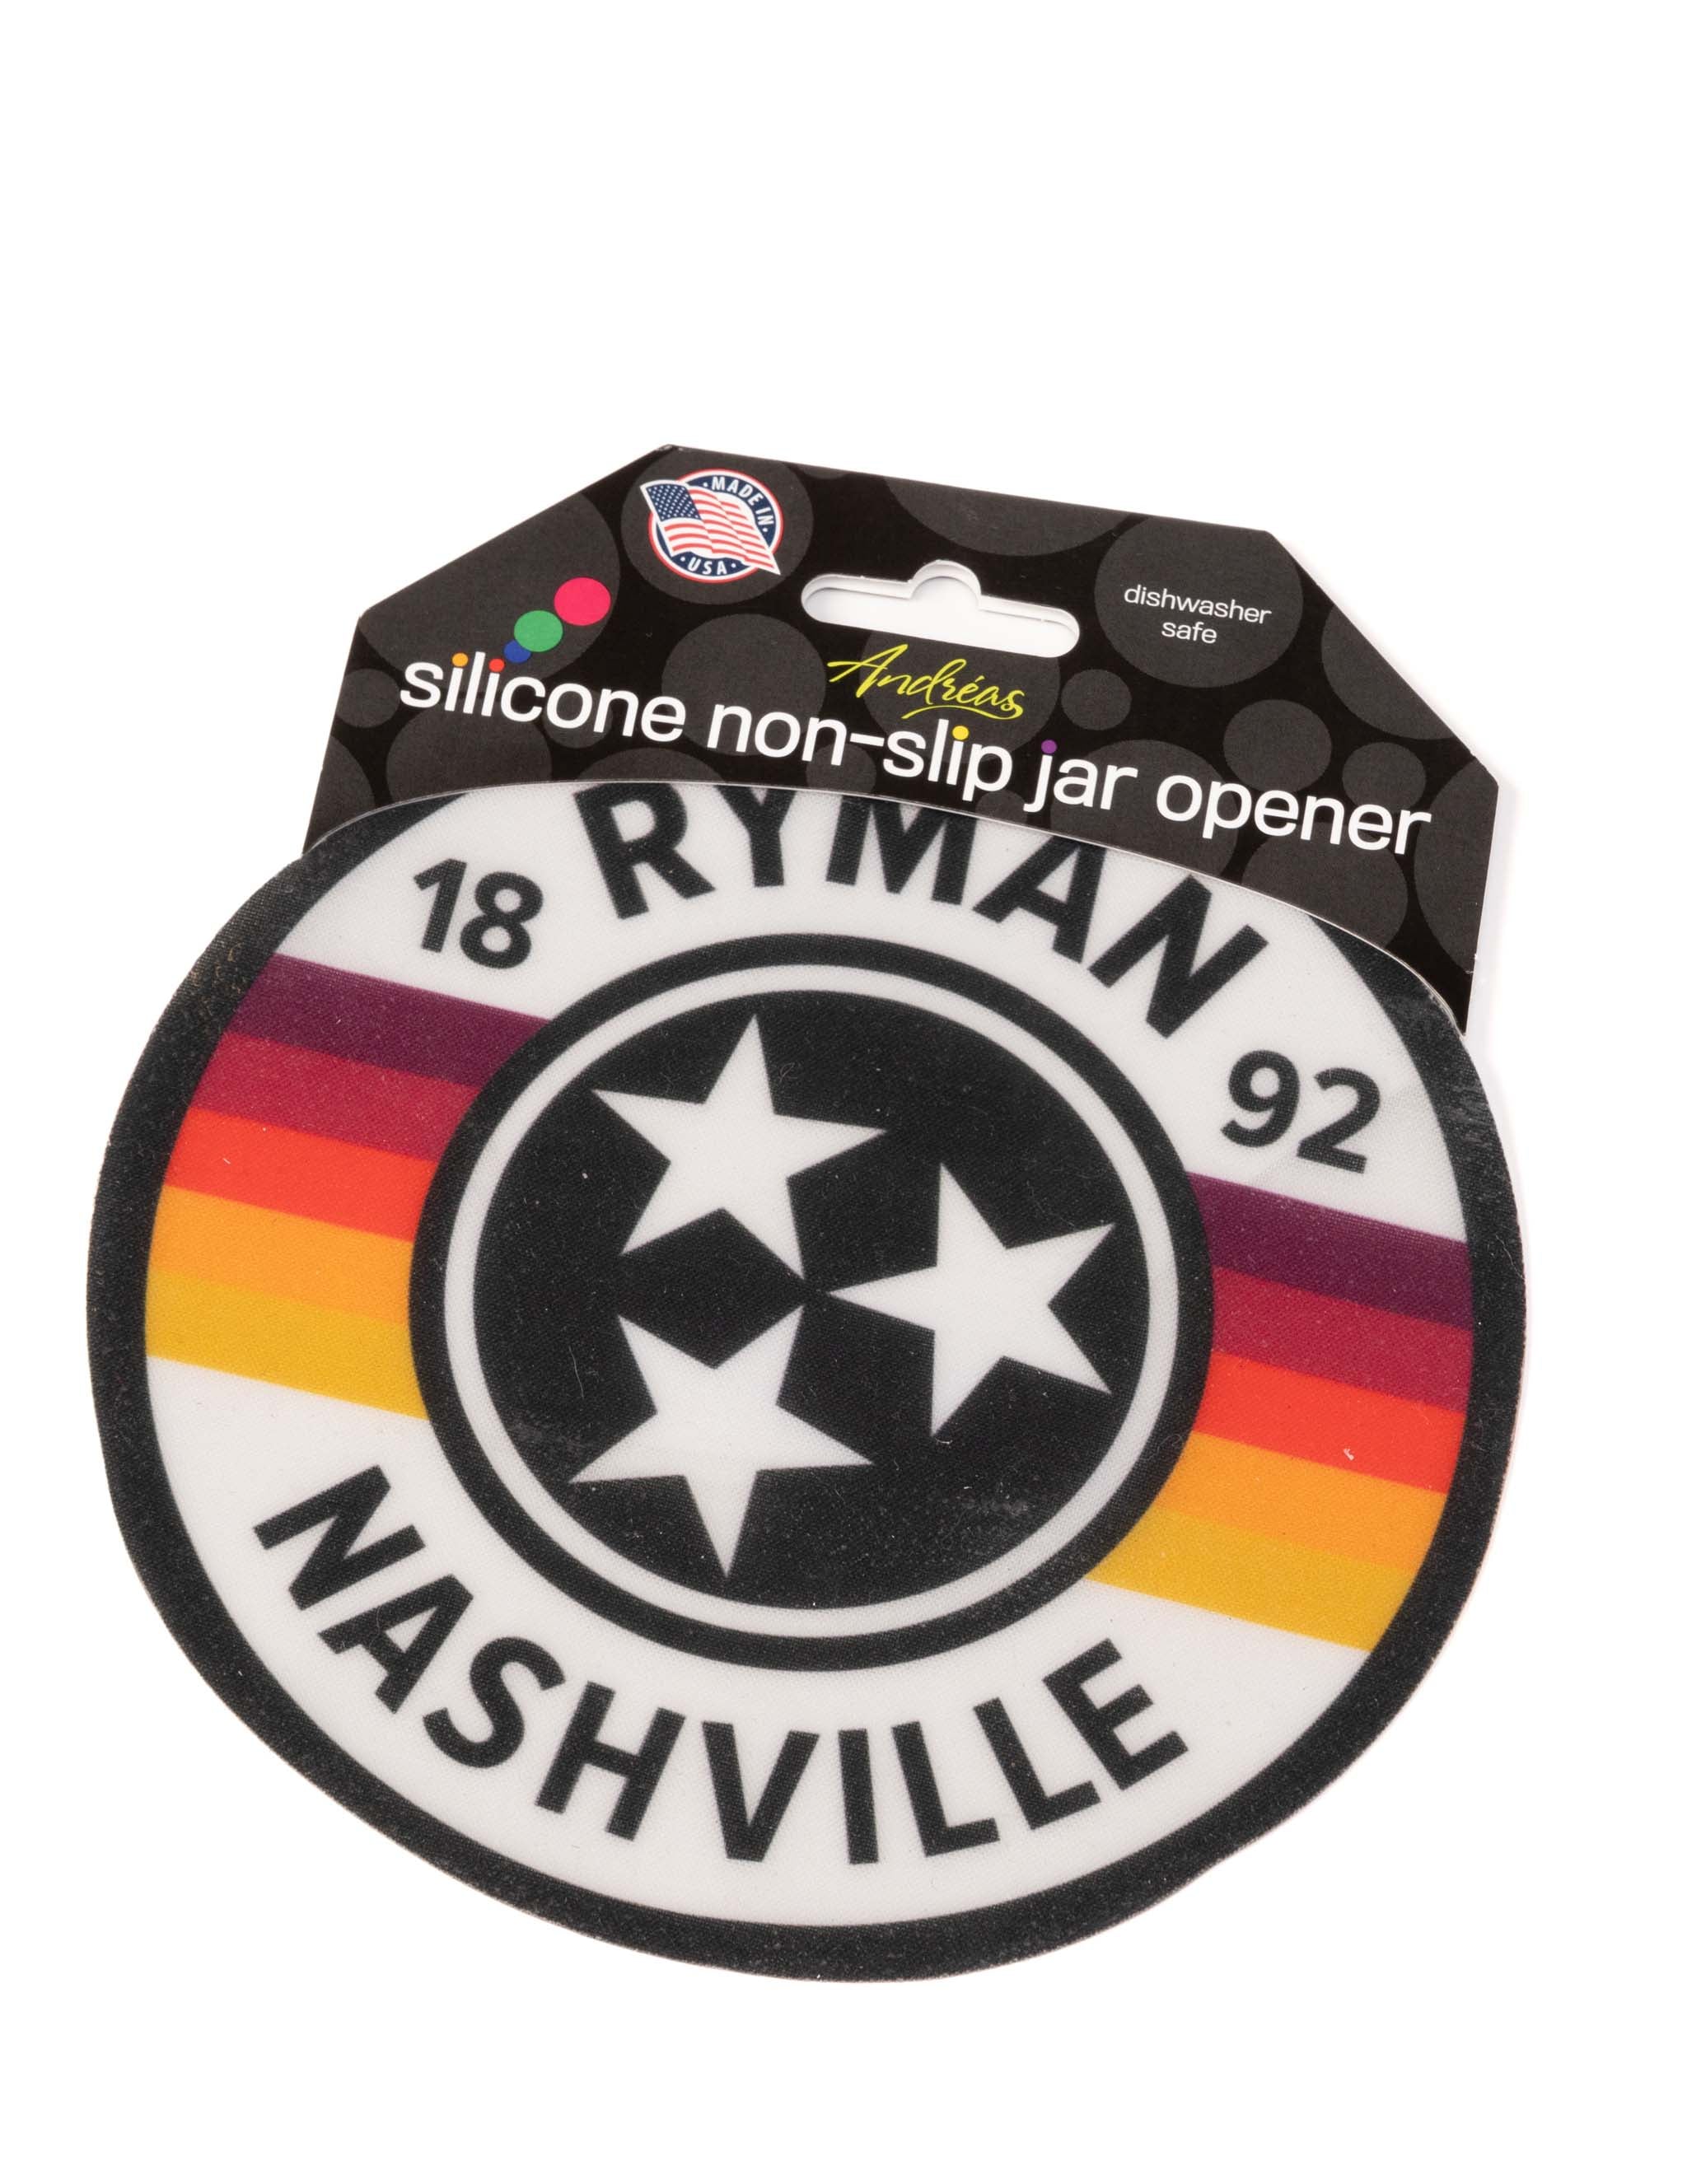 Ryman Tri-Star Silicone Jar Opener